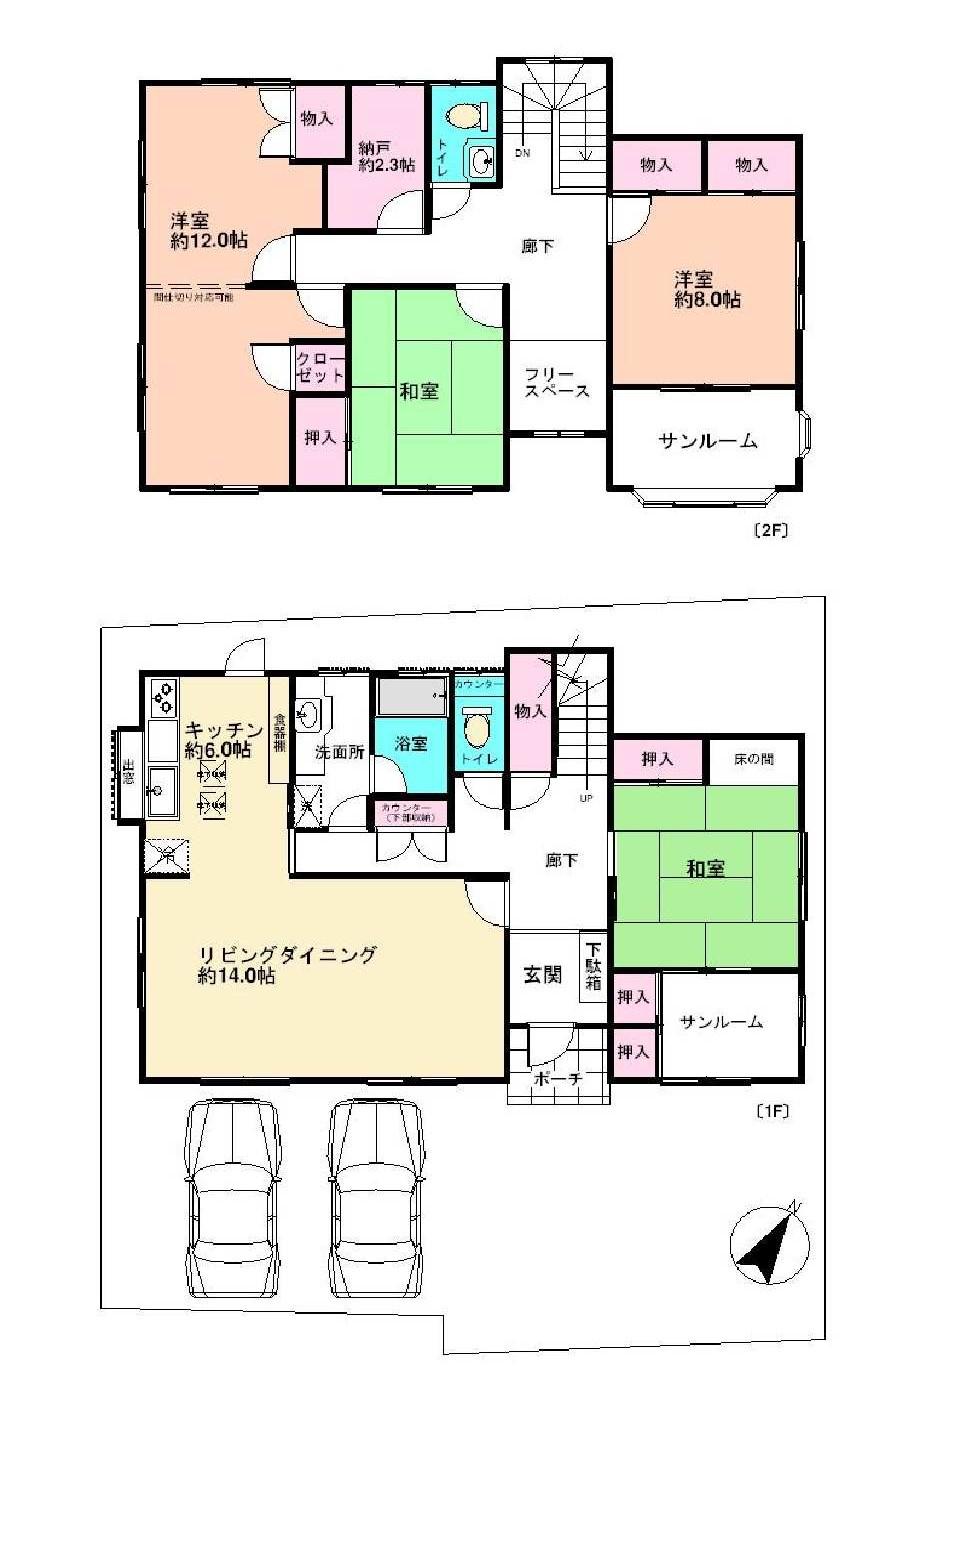 Floor plan. 21,800,000 yen, 4LDK + S (storeroom), Land area 192.99 sq m , Building area 160.64 sq m